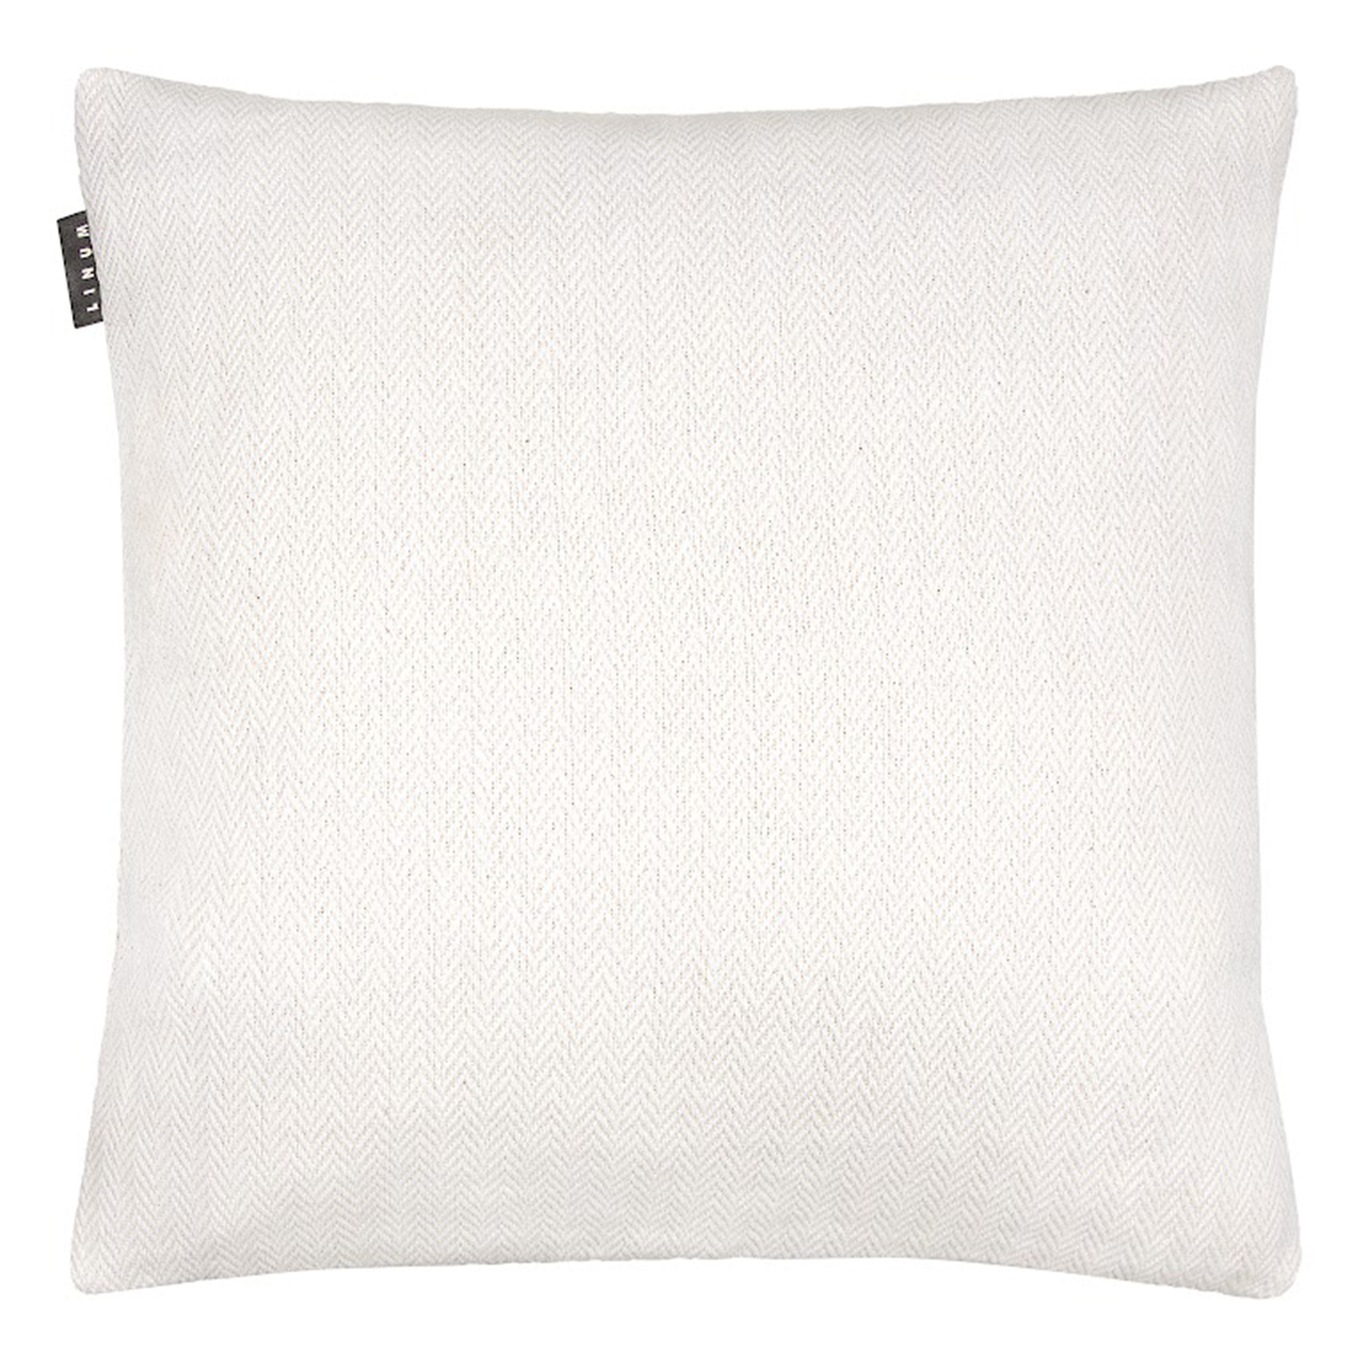 Shepard Tyynynpäällinen 50x50 cm, Valkoinen